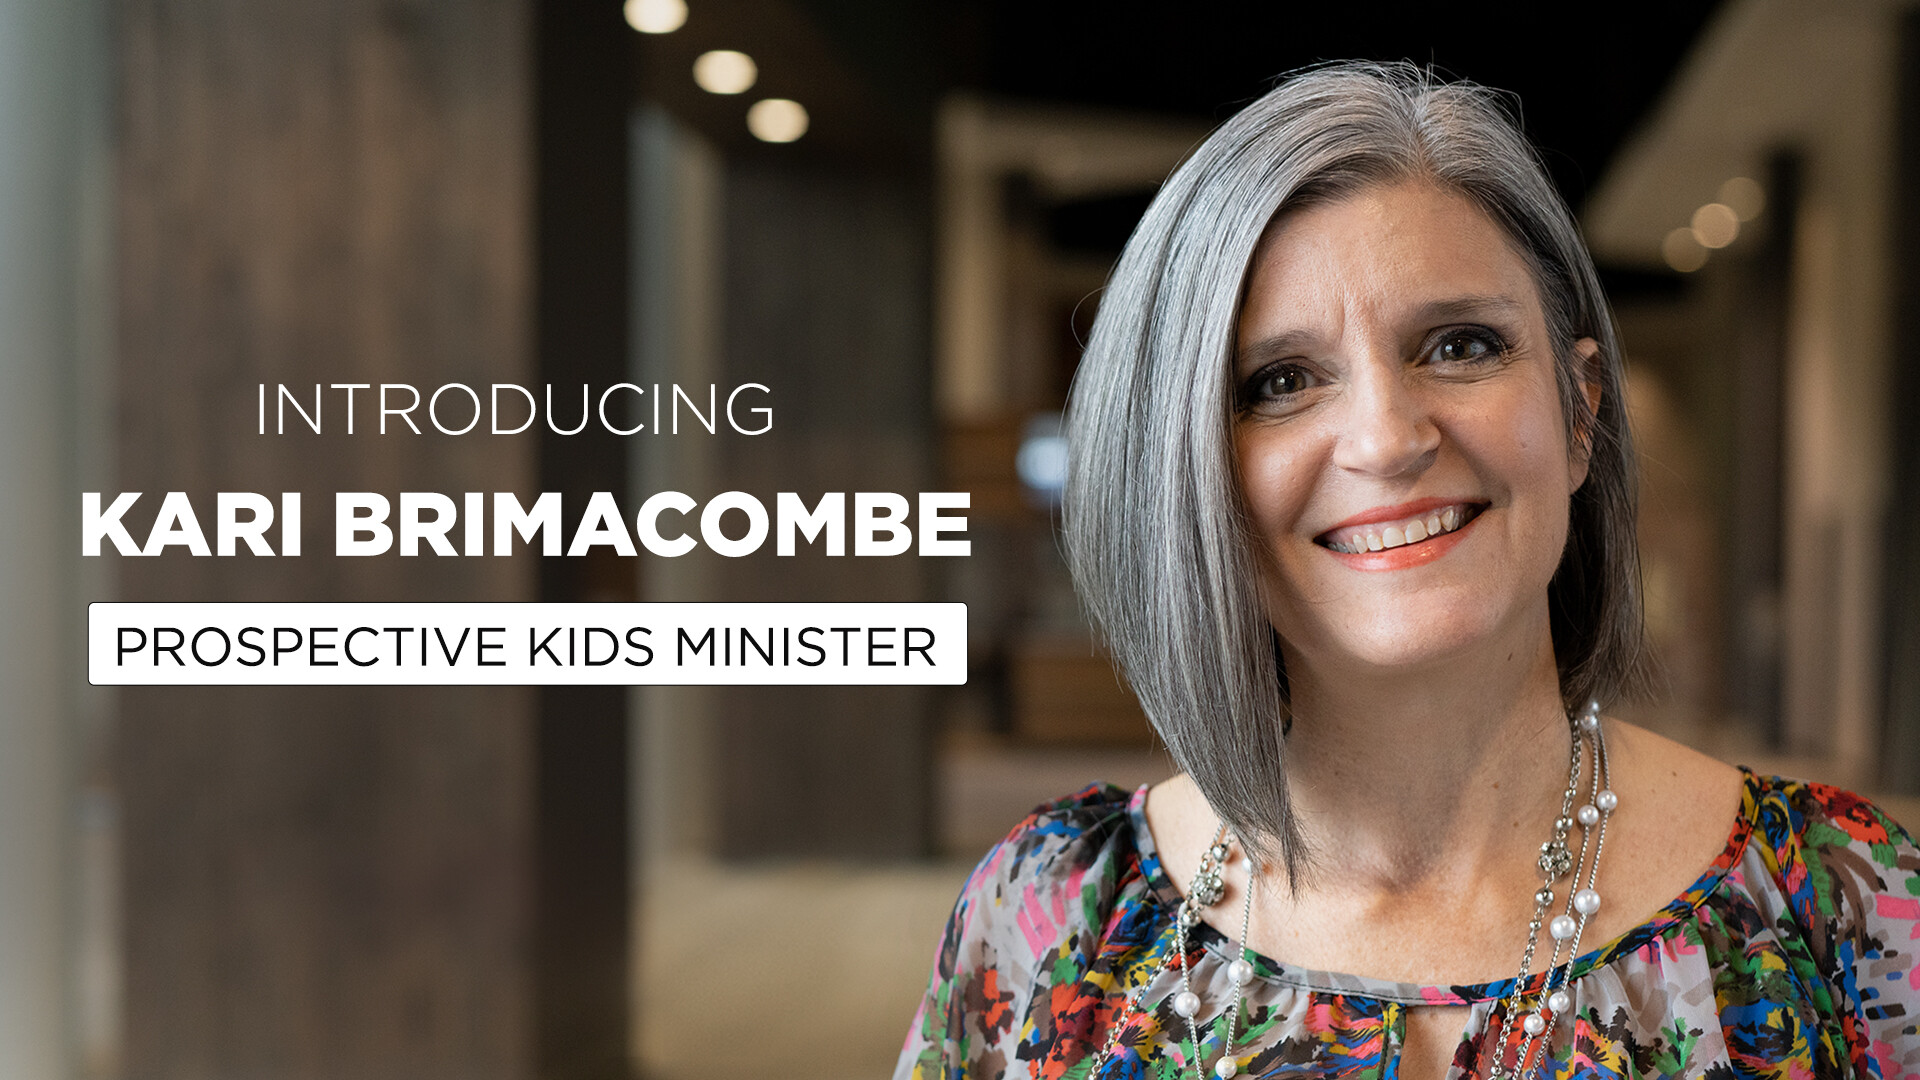 Meet Kari Brimacombe